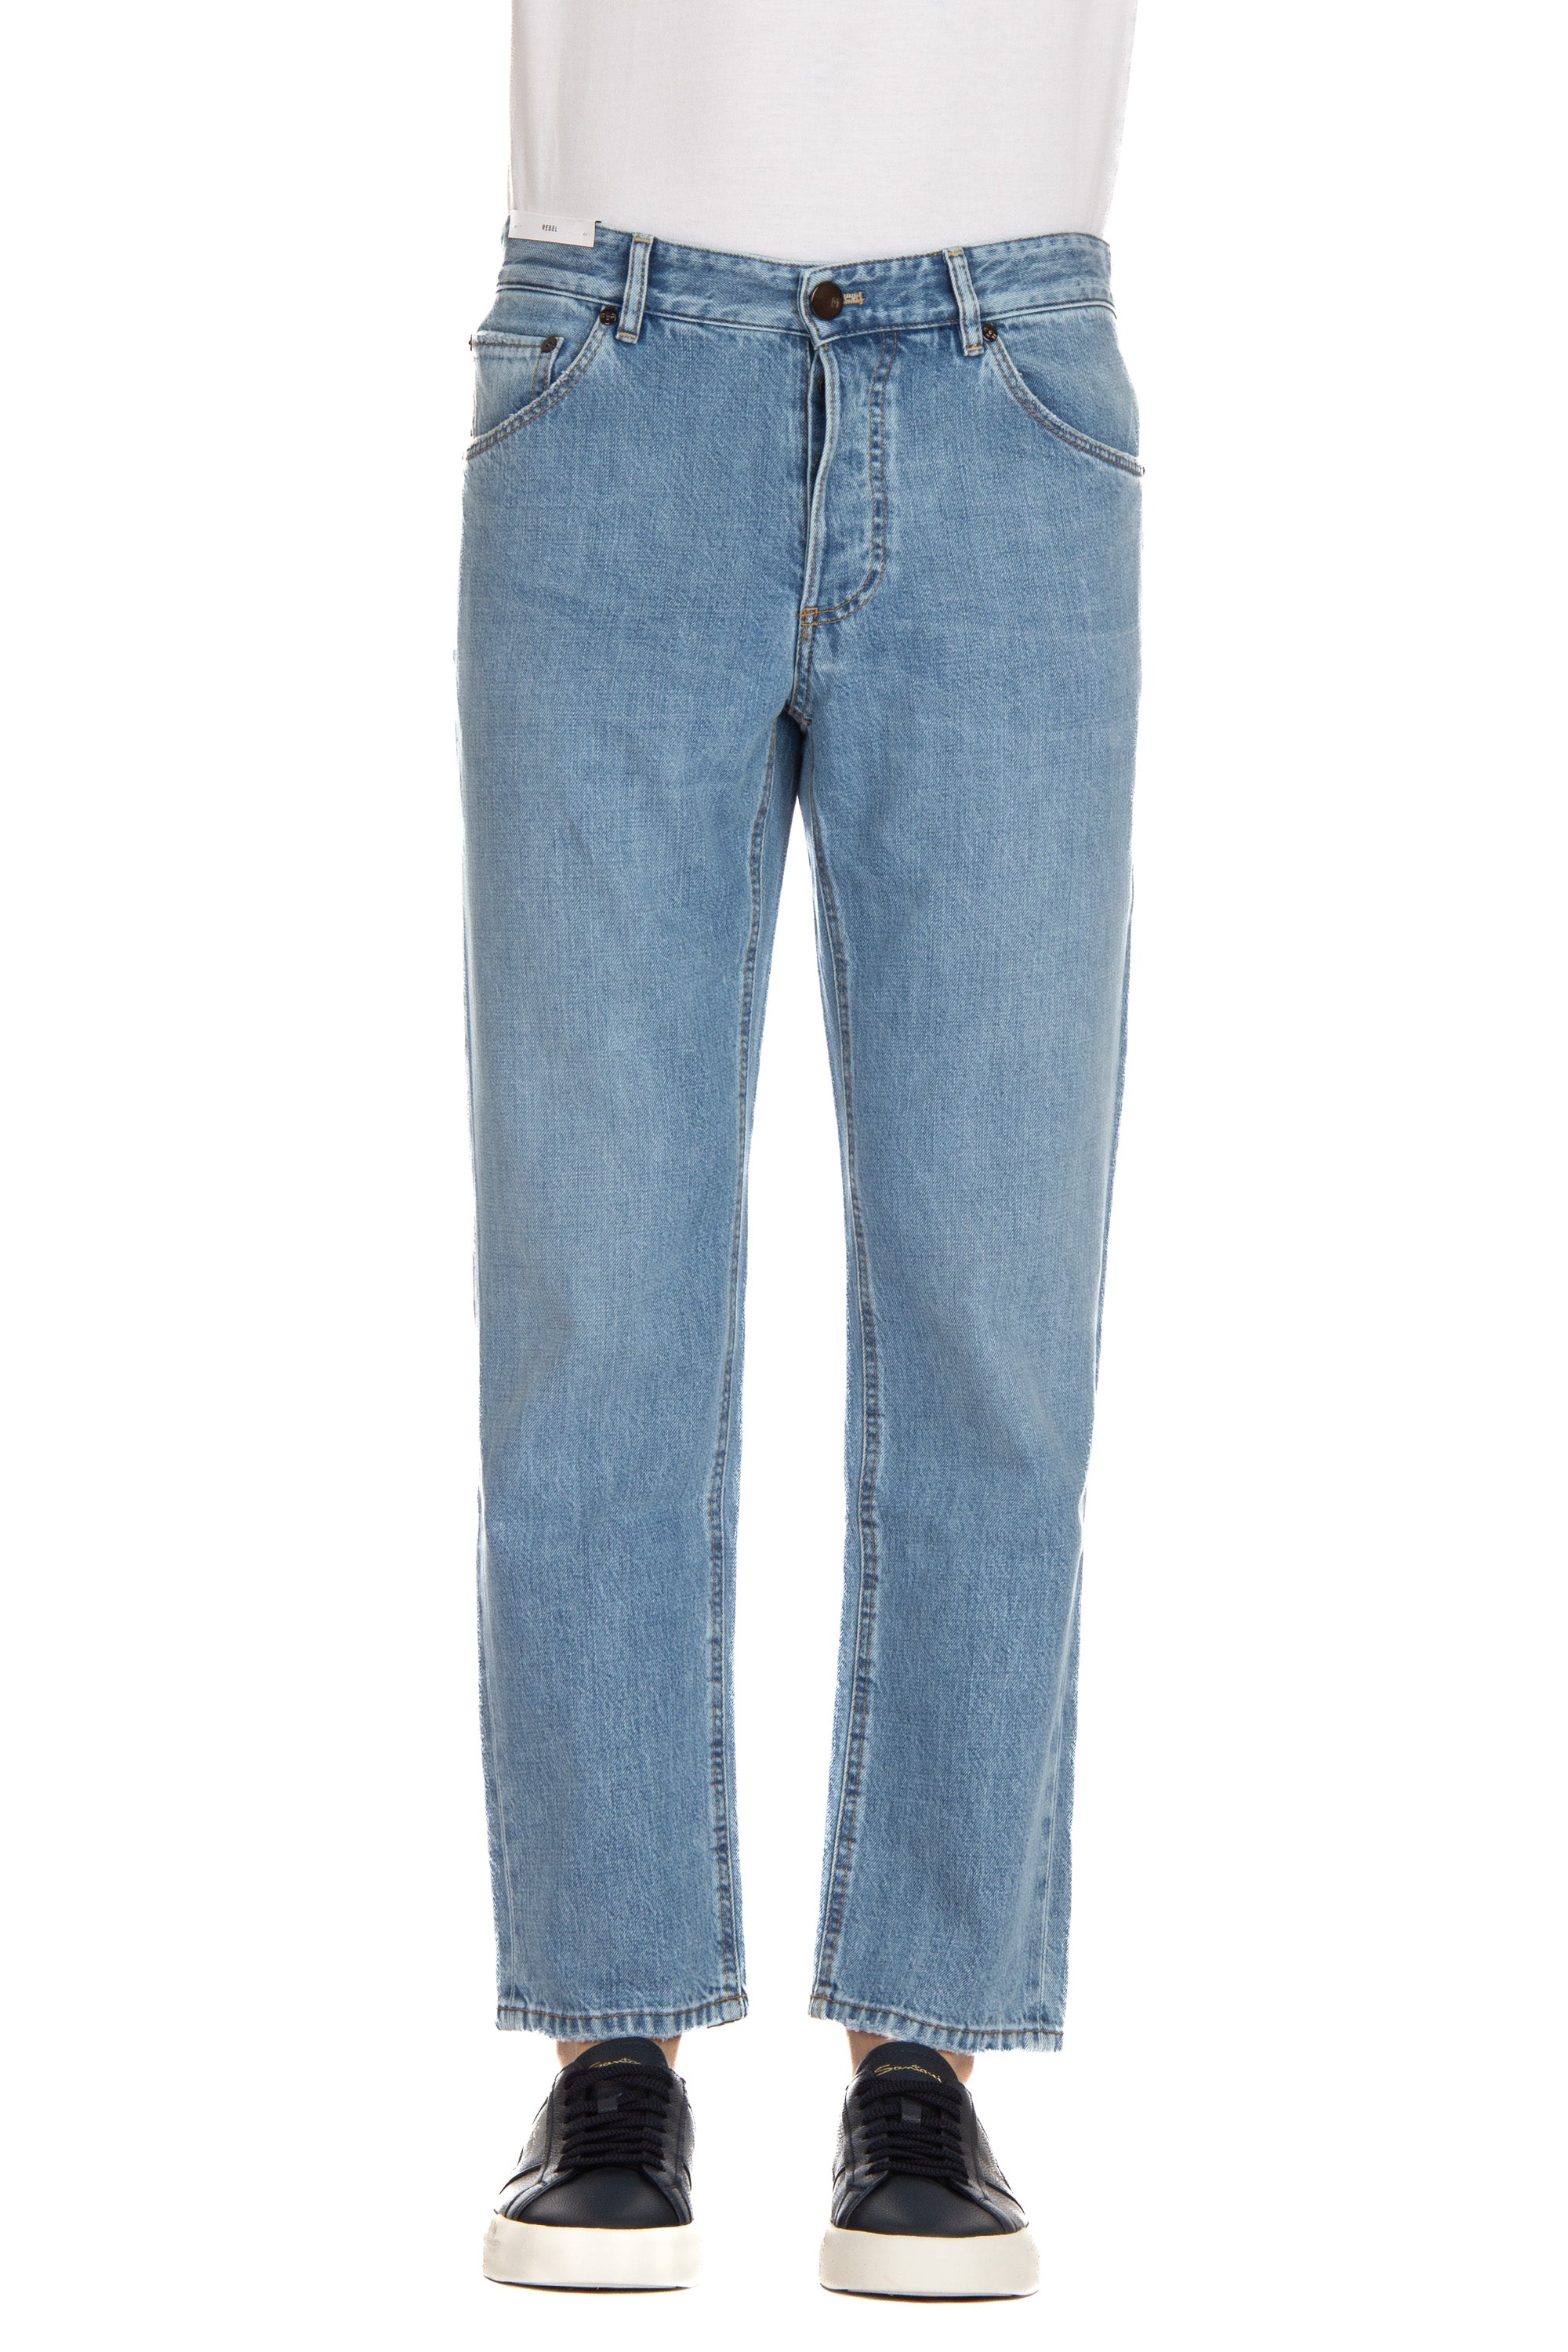 Jeans in cotone-lyocel lavaggio chiaro Rebel fit